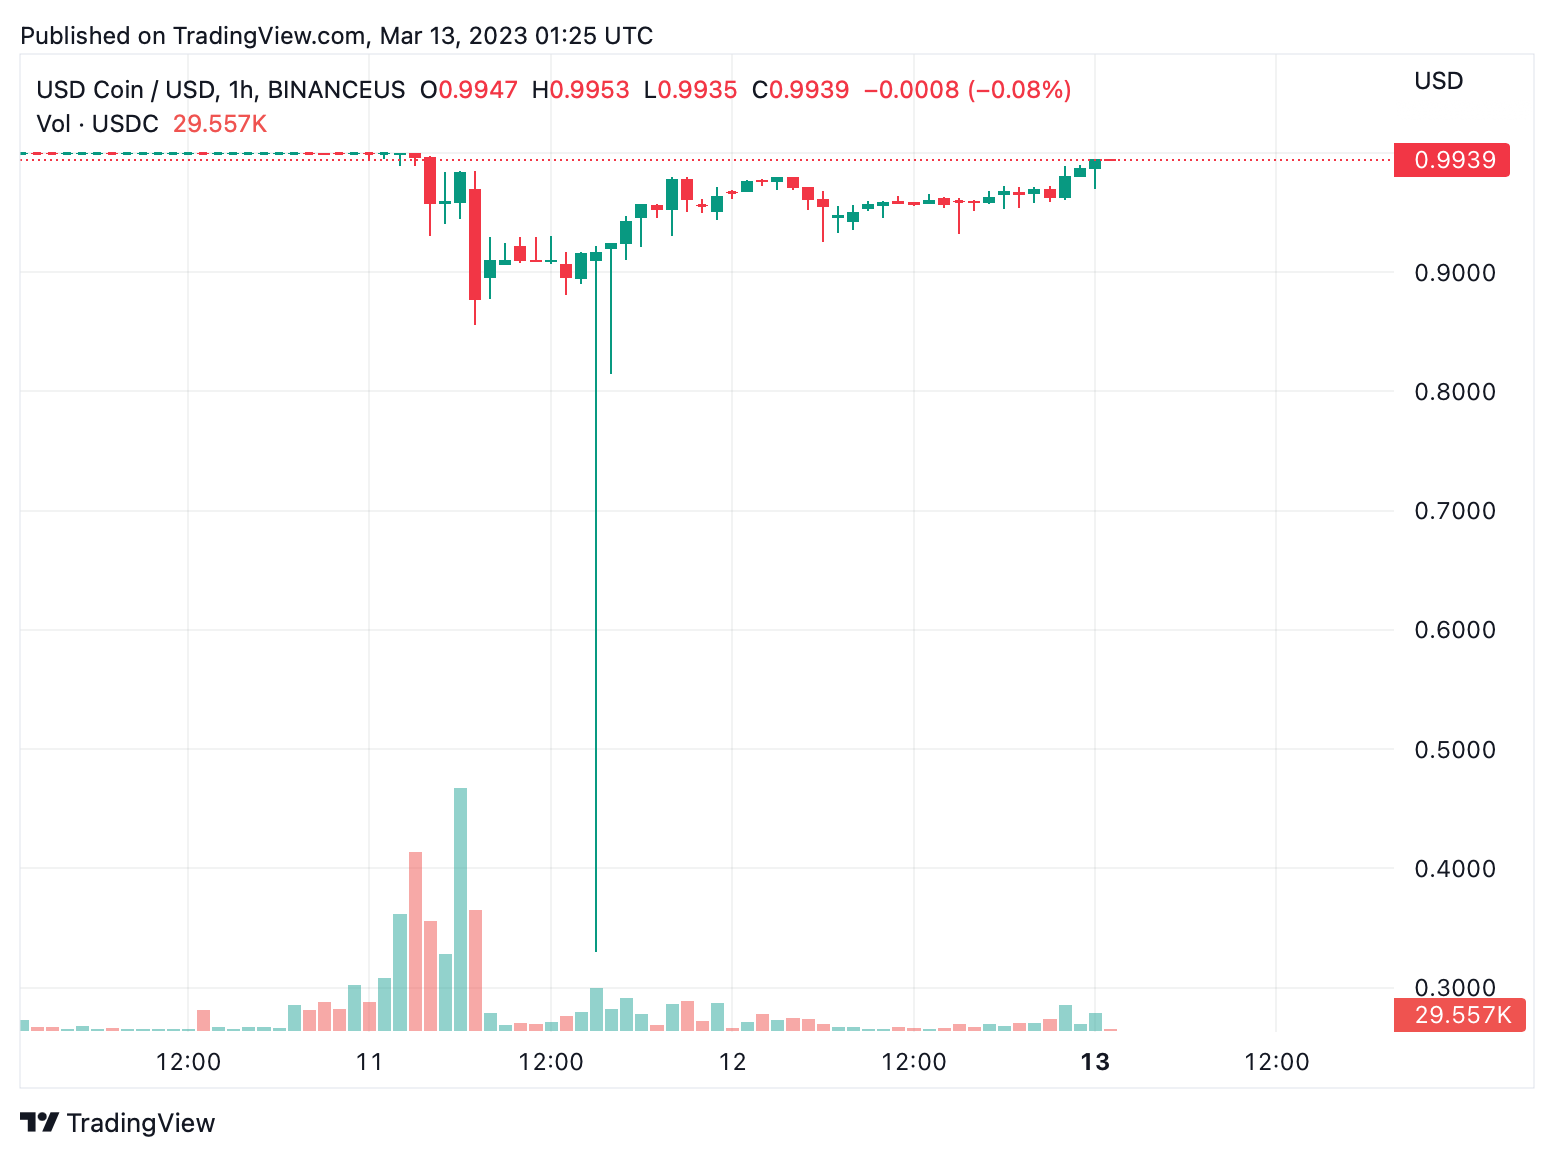 Το USDC Stablecoin πλησιάζει την ισοτιμία με το USD μετά την ανακοίνωση διάσωσης της Fed